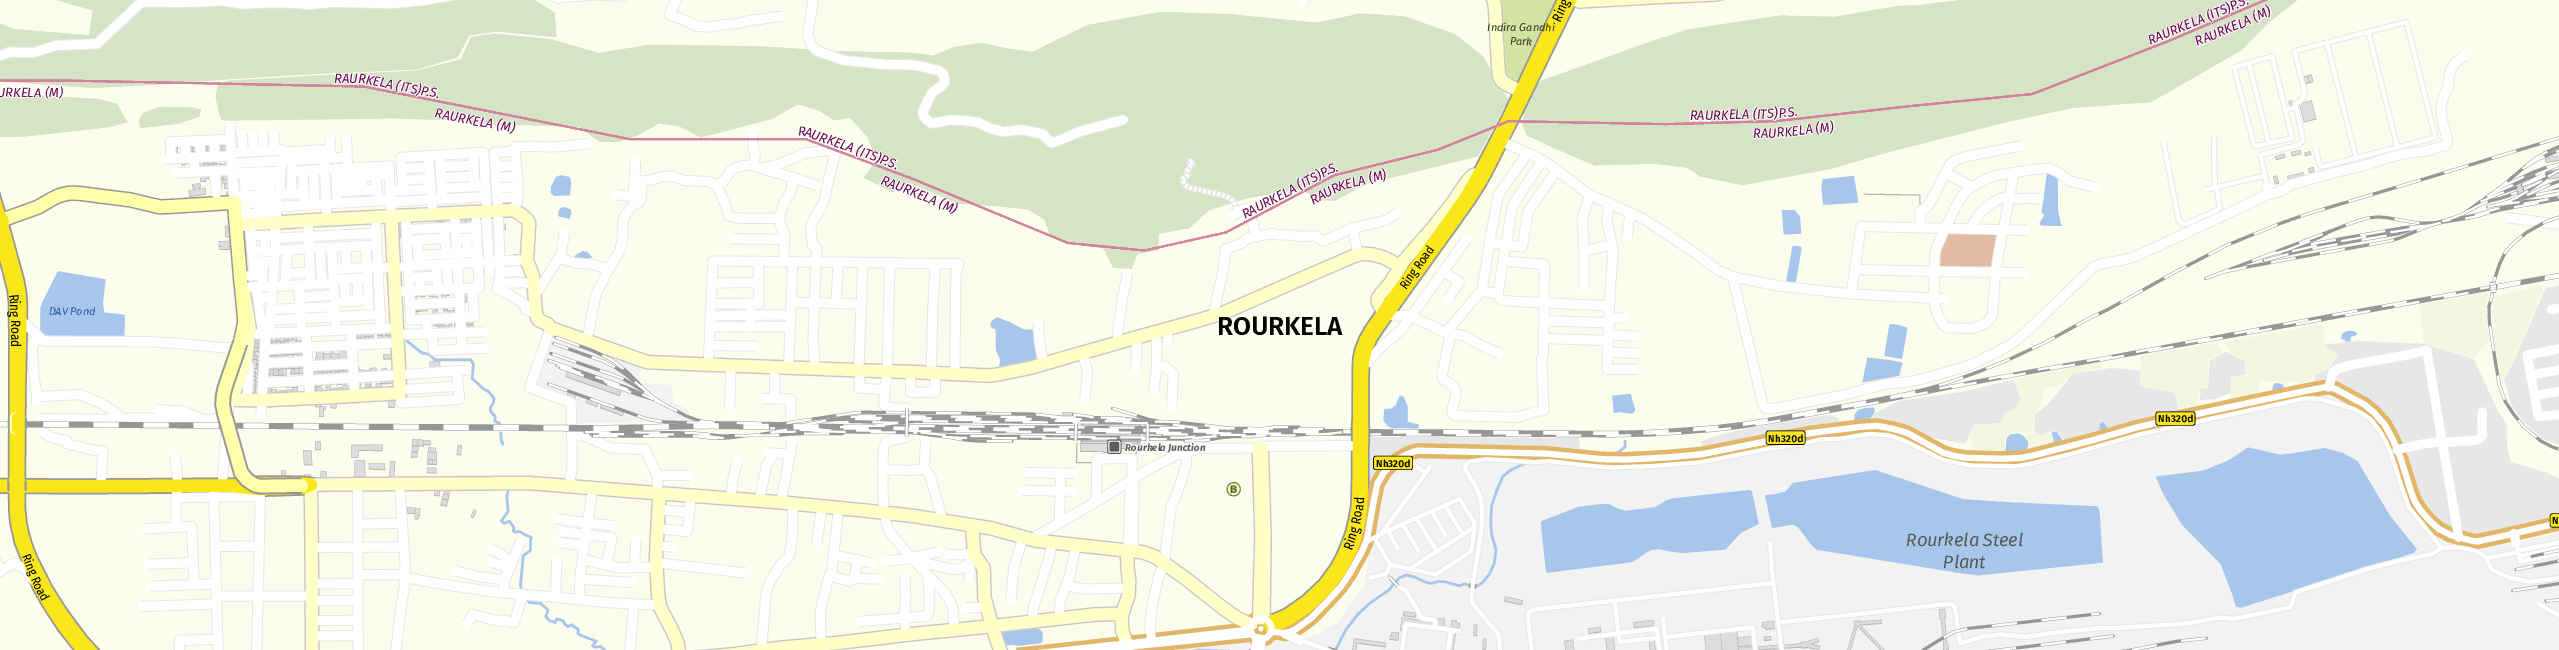 Stadtplan Rourkela zum Downloaden.